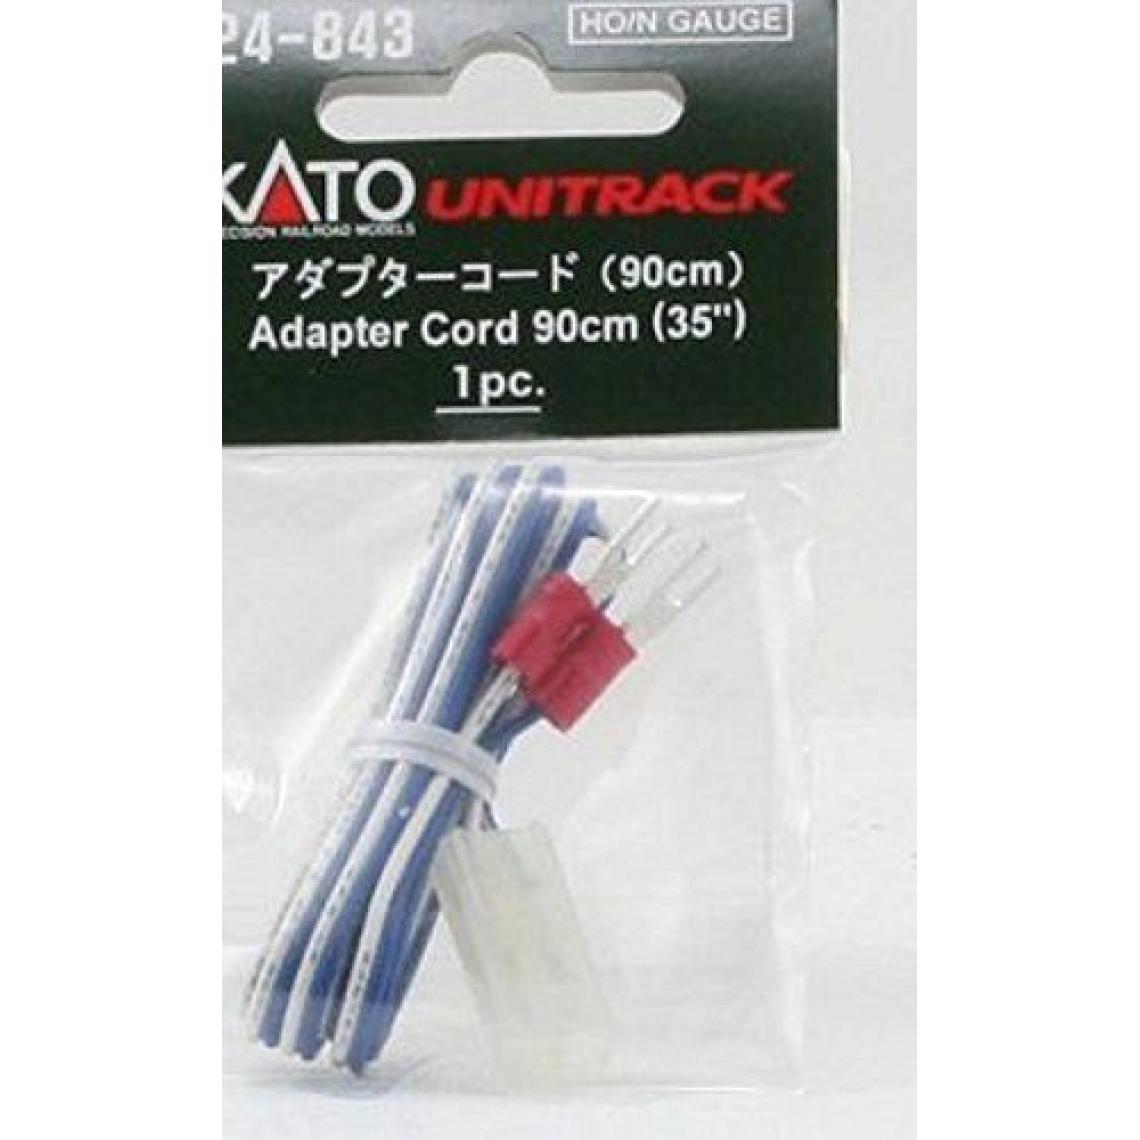 Inconnu - Câble adaptateur N Kato 24-843 - Accessoires et pièces